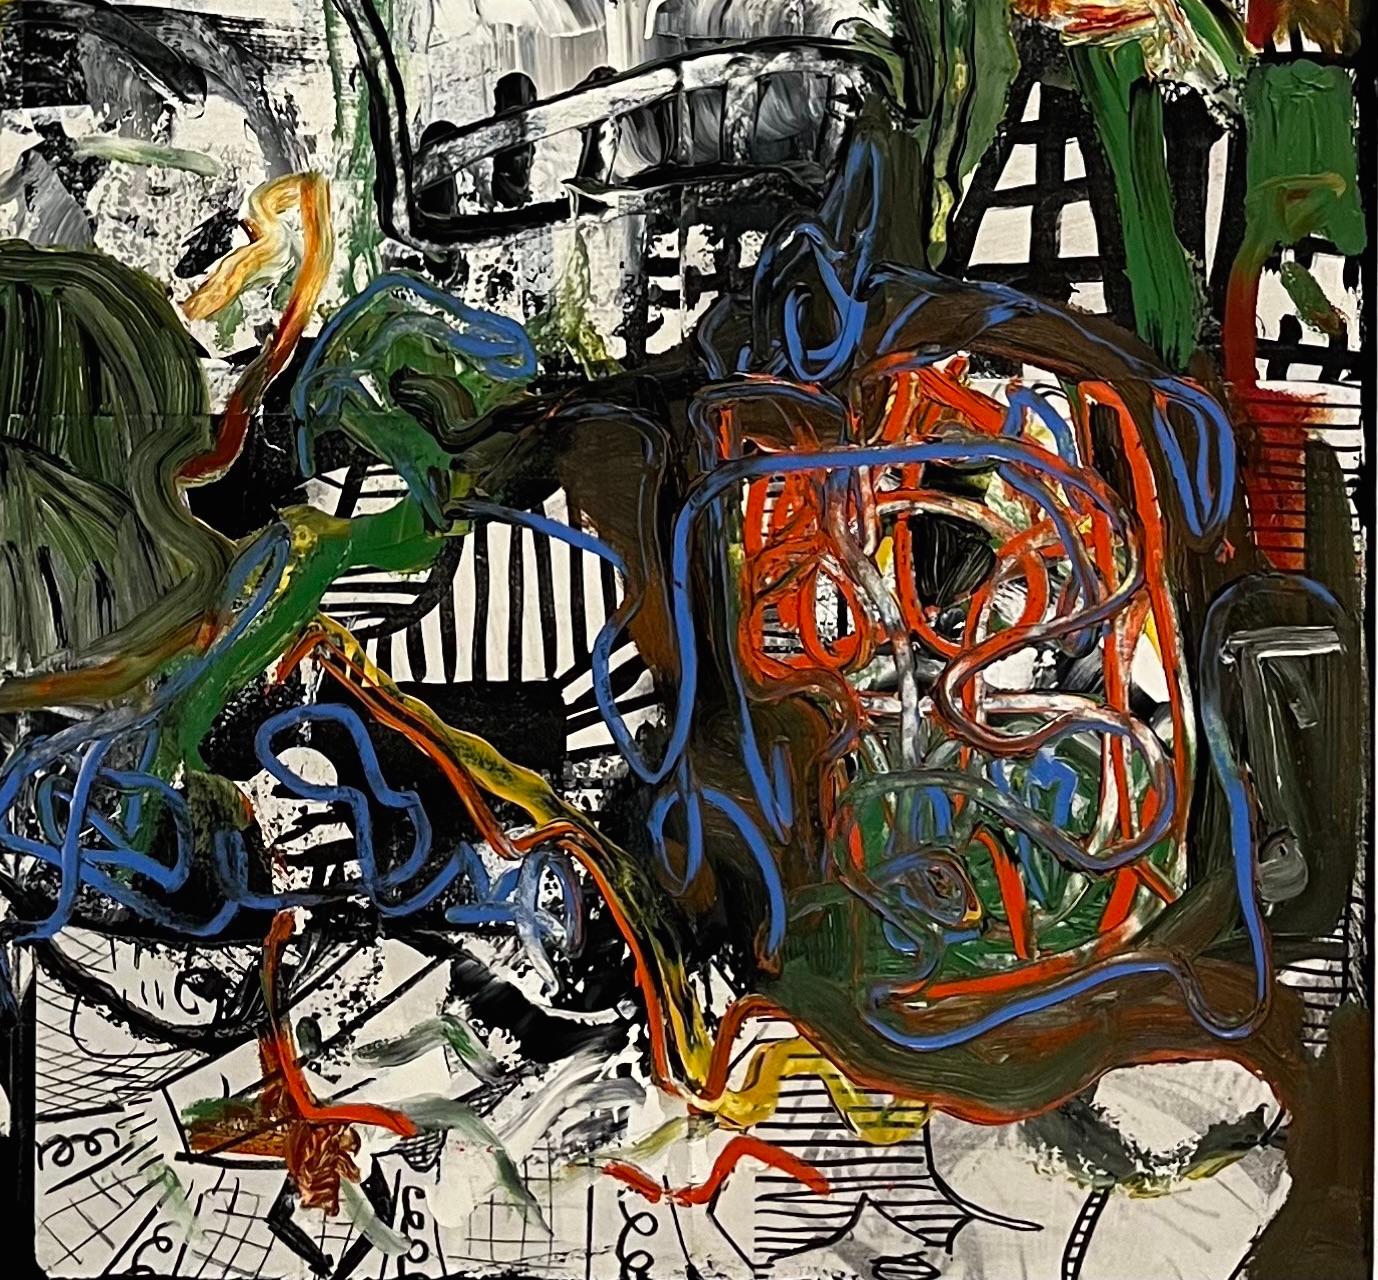 Dieses abstrakte Ölgemälde des verstorbenen Künstlers Dick Wray aus Houston drückt eine beeindruckende kinetische Energie aus. Die dicken Farbschichten sorgen für eine bemerkenswerte Taktilität, die man bei Dick Wrays Kunstwerken häufig findet. Die